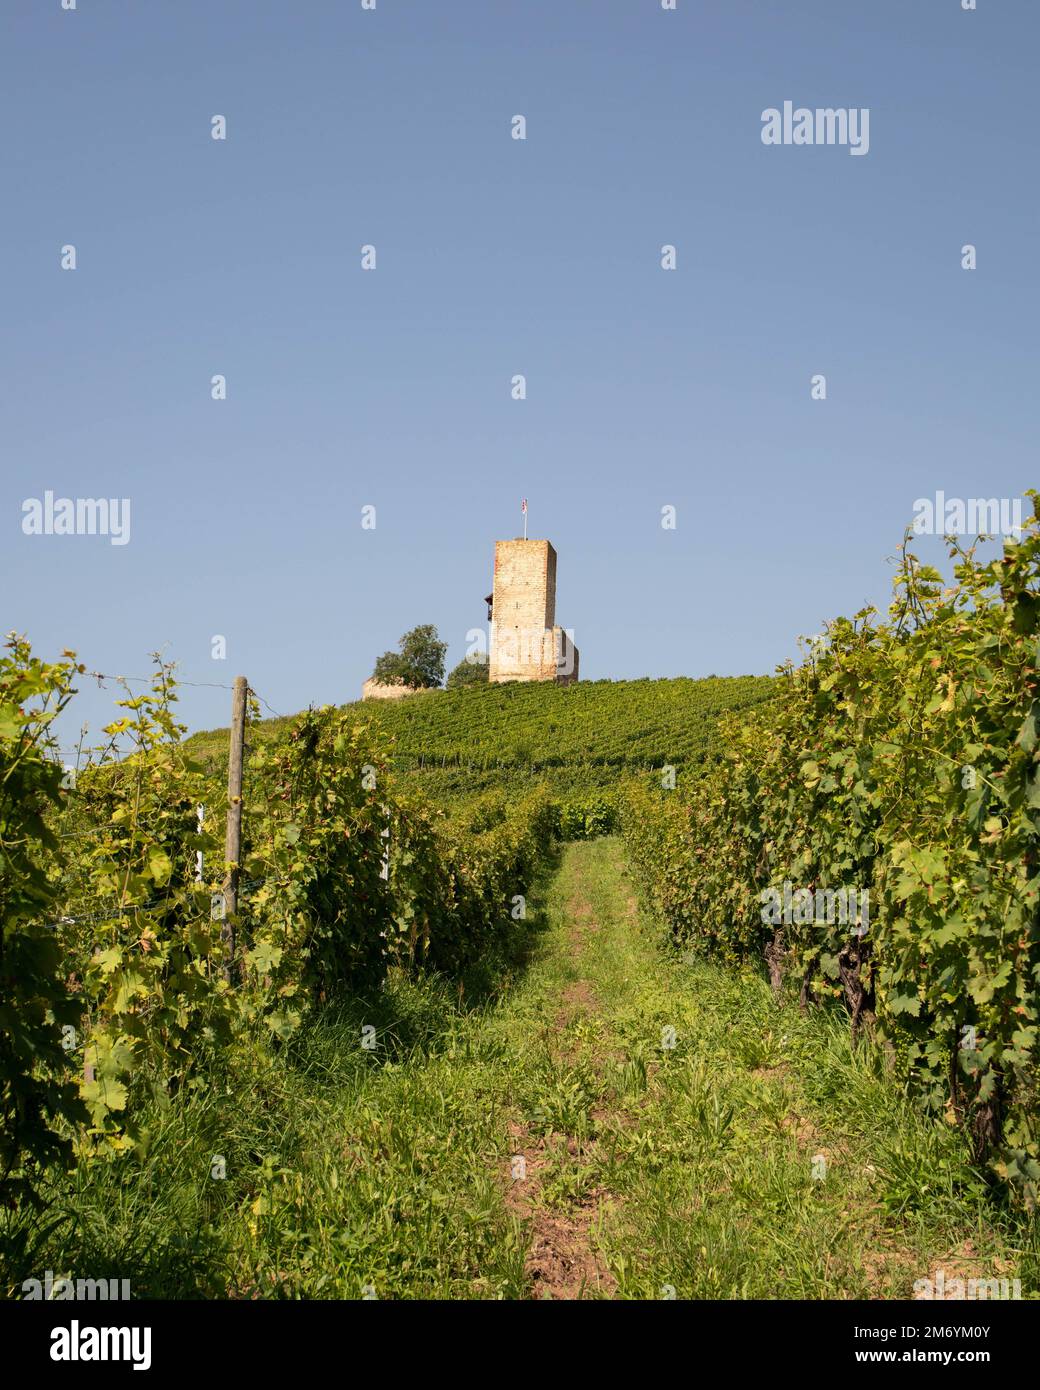 Vigneto prendendo il sole in regione Alsace.Wine in France.paesaggio mozzafiato con colline piene di viti in luce dorata. Bella vista sul vigneto Foto Stock